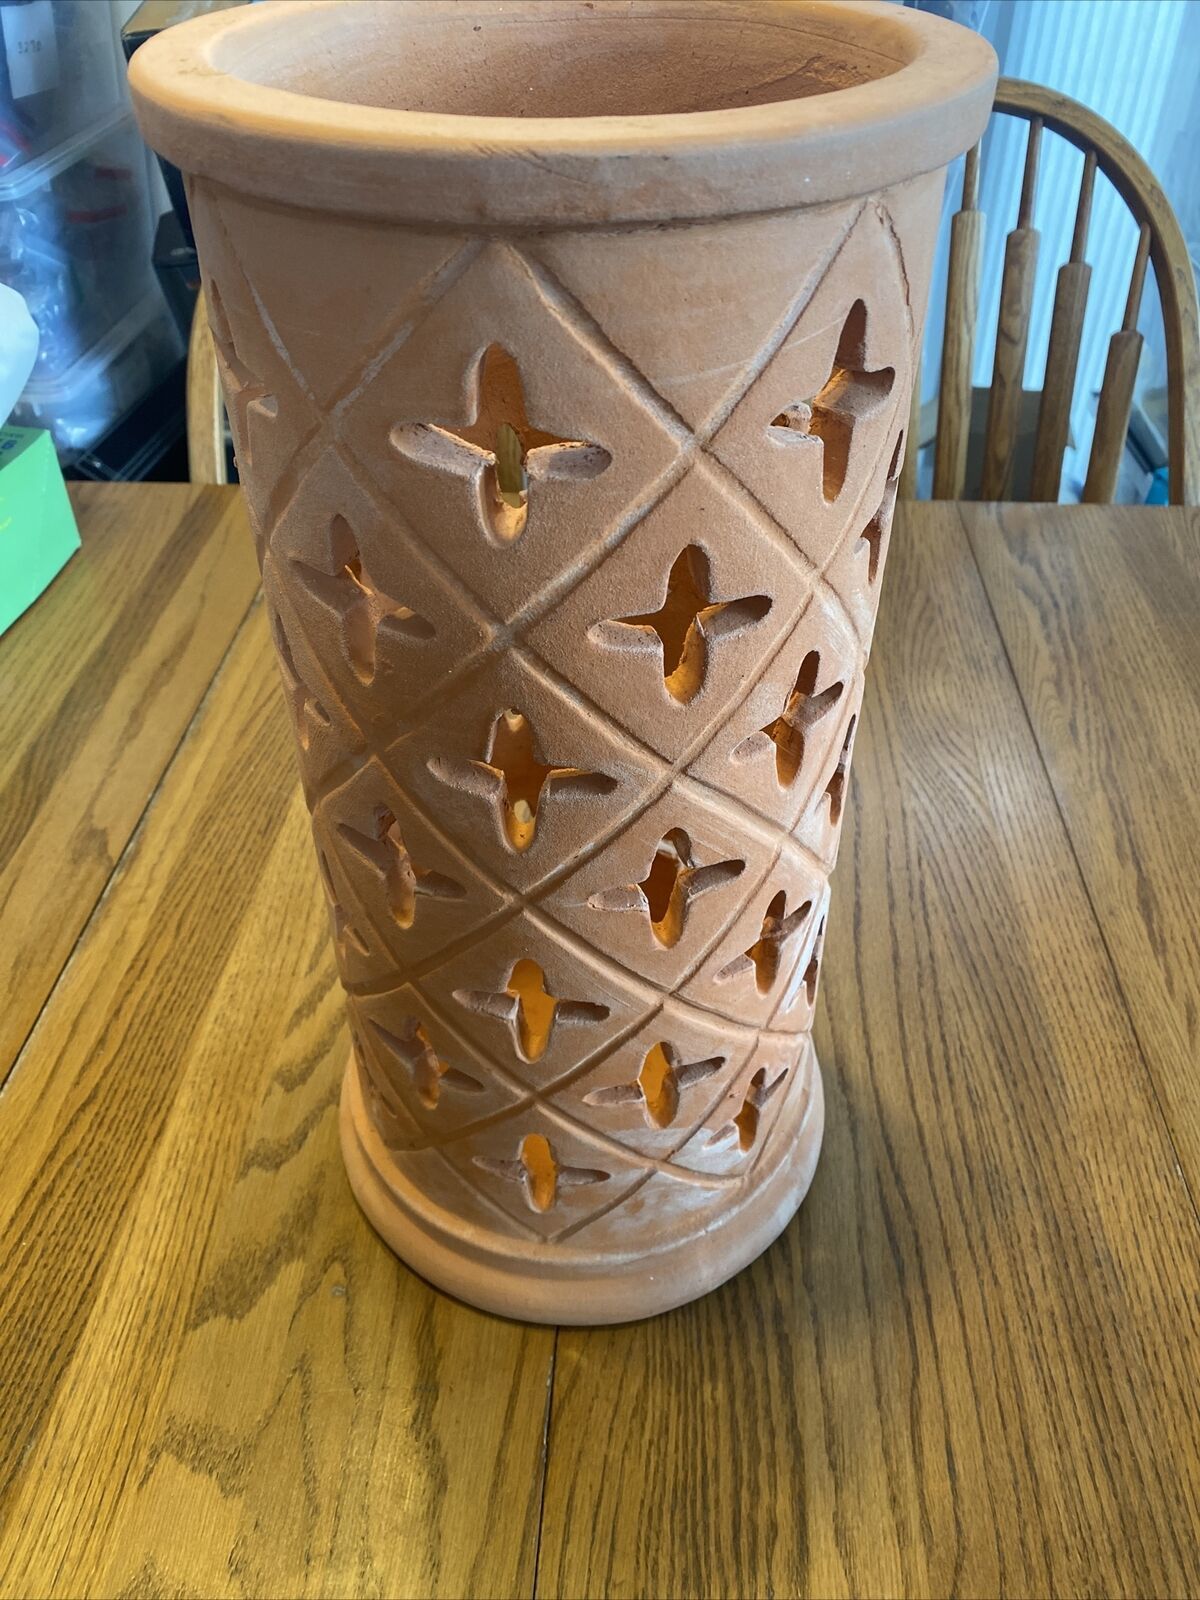 Large Ceramic Vase, 17.5 X 8 Inches, New - $65.29